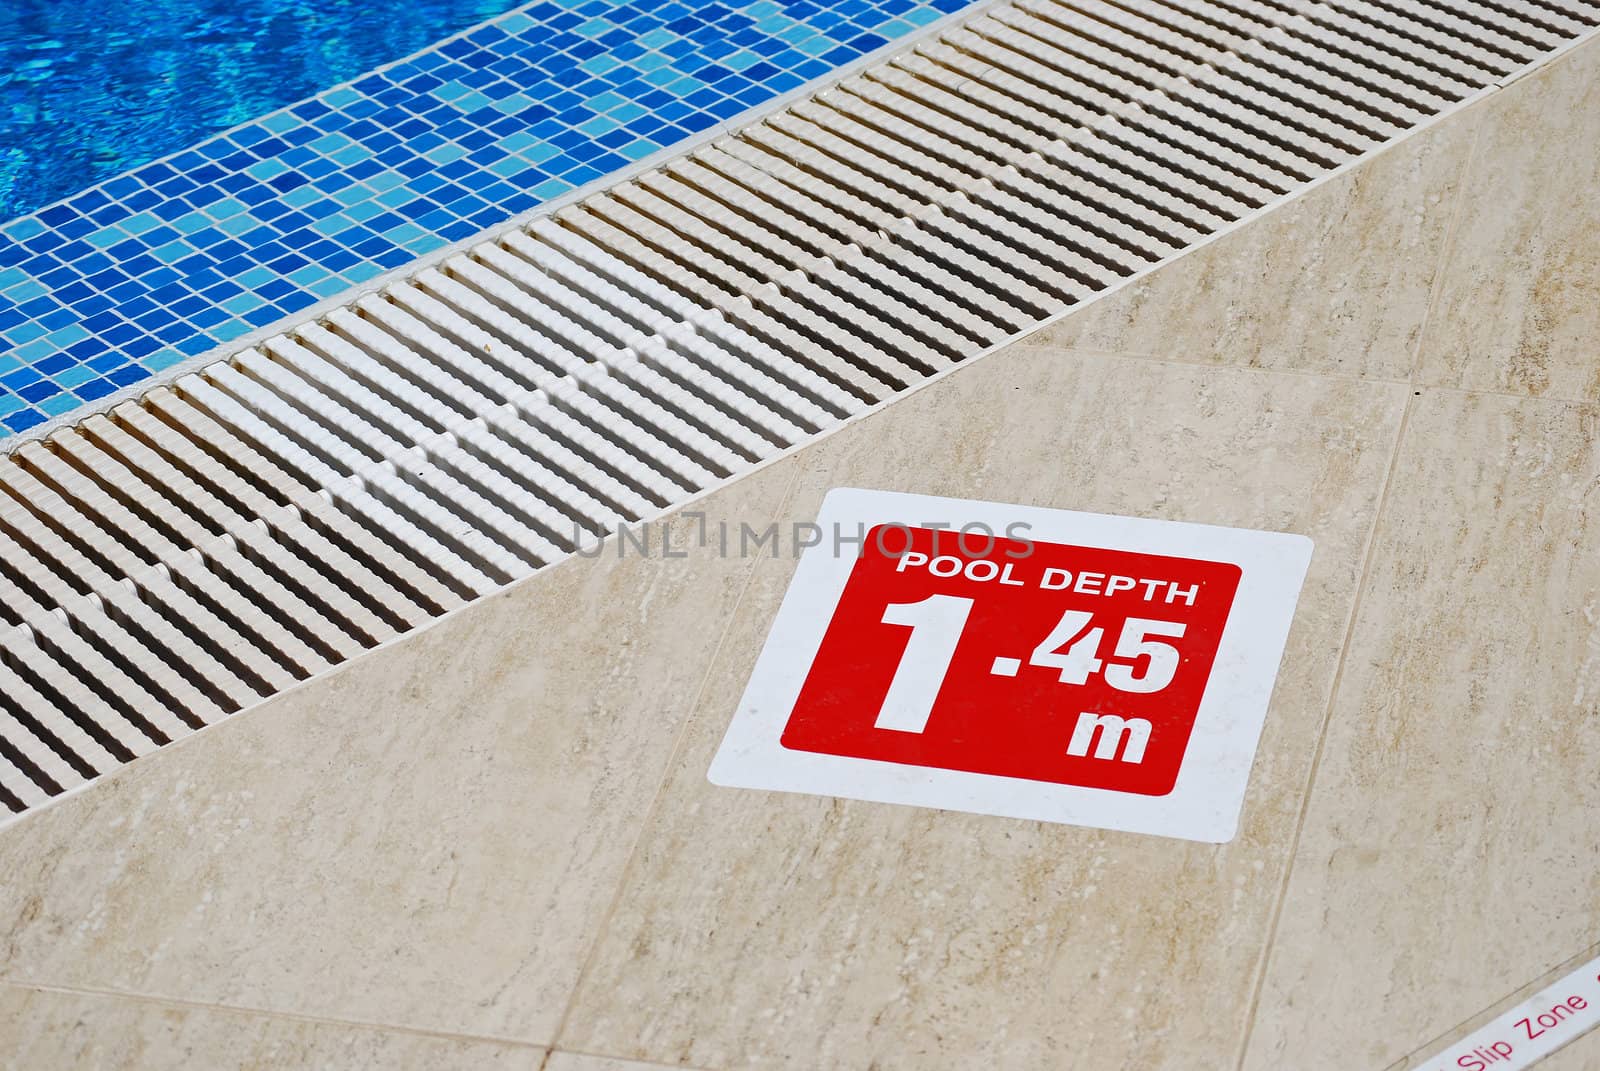 Pool depth sign by varbenov